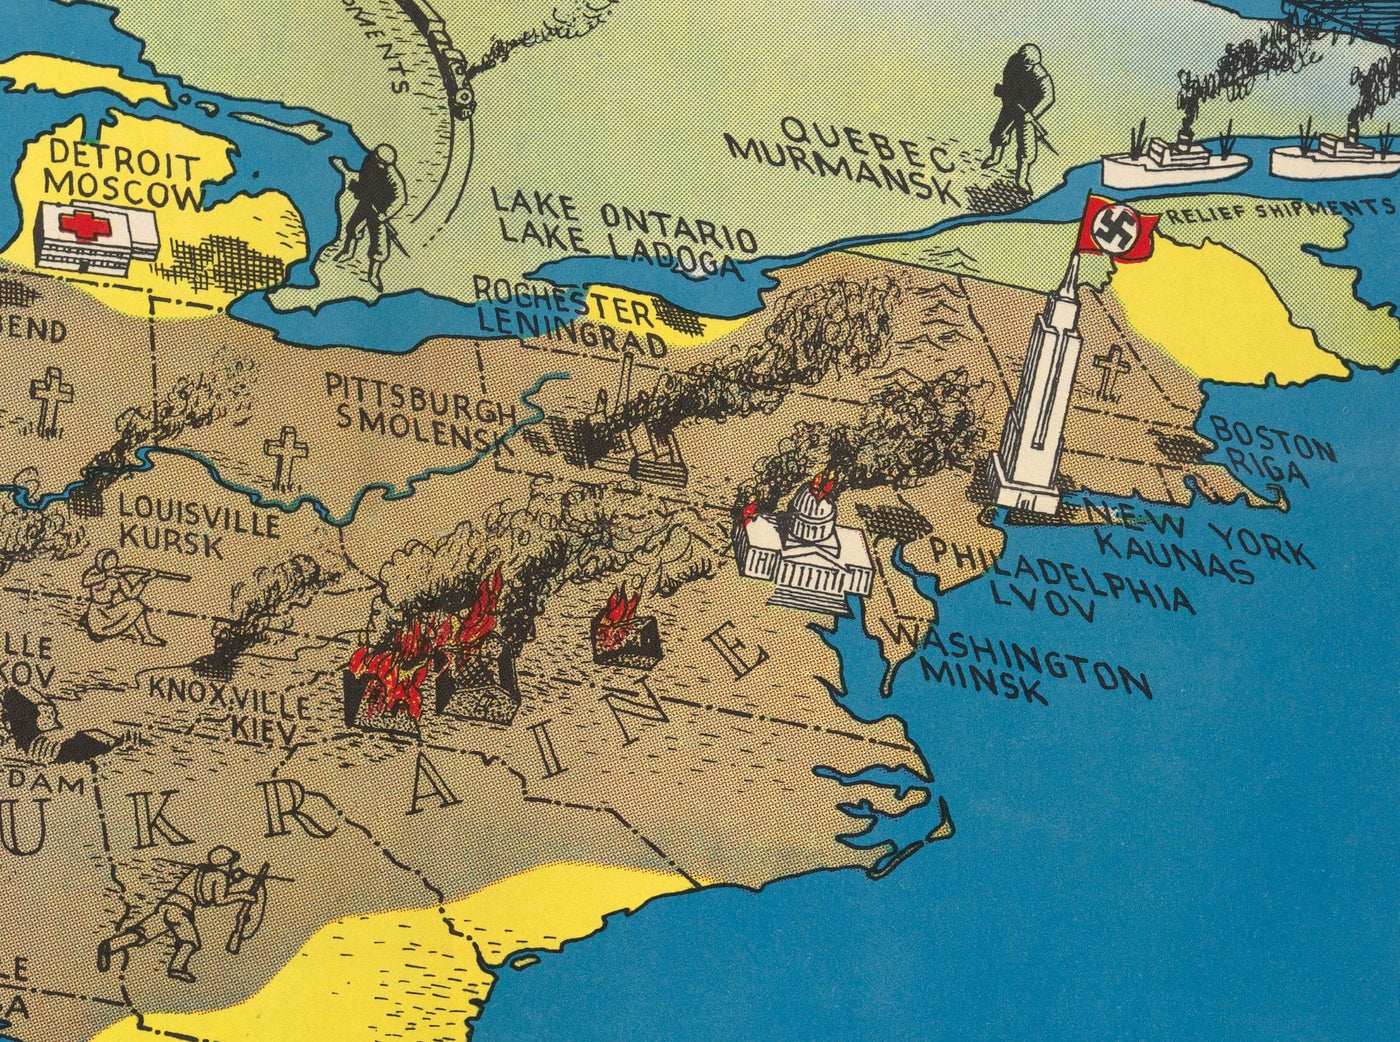 Ancienne carte de la Russie et des États-Unis, 1943 - Invasion nazie de l'Union soviétique et de l'Ukraine pendant la Seconde Guerre mondiale - 38 millions de personnes se sont échappées, 10 millions sont mortes.